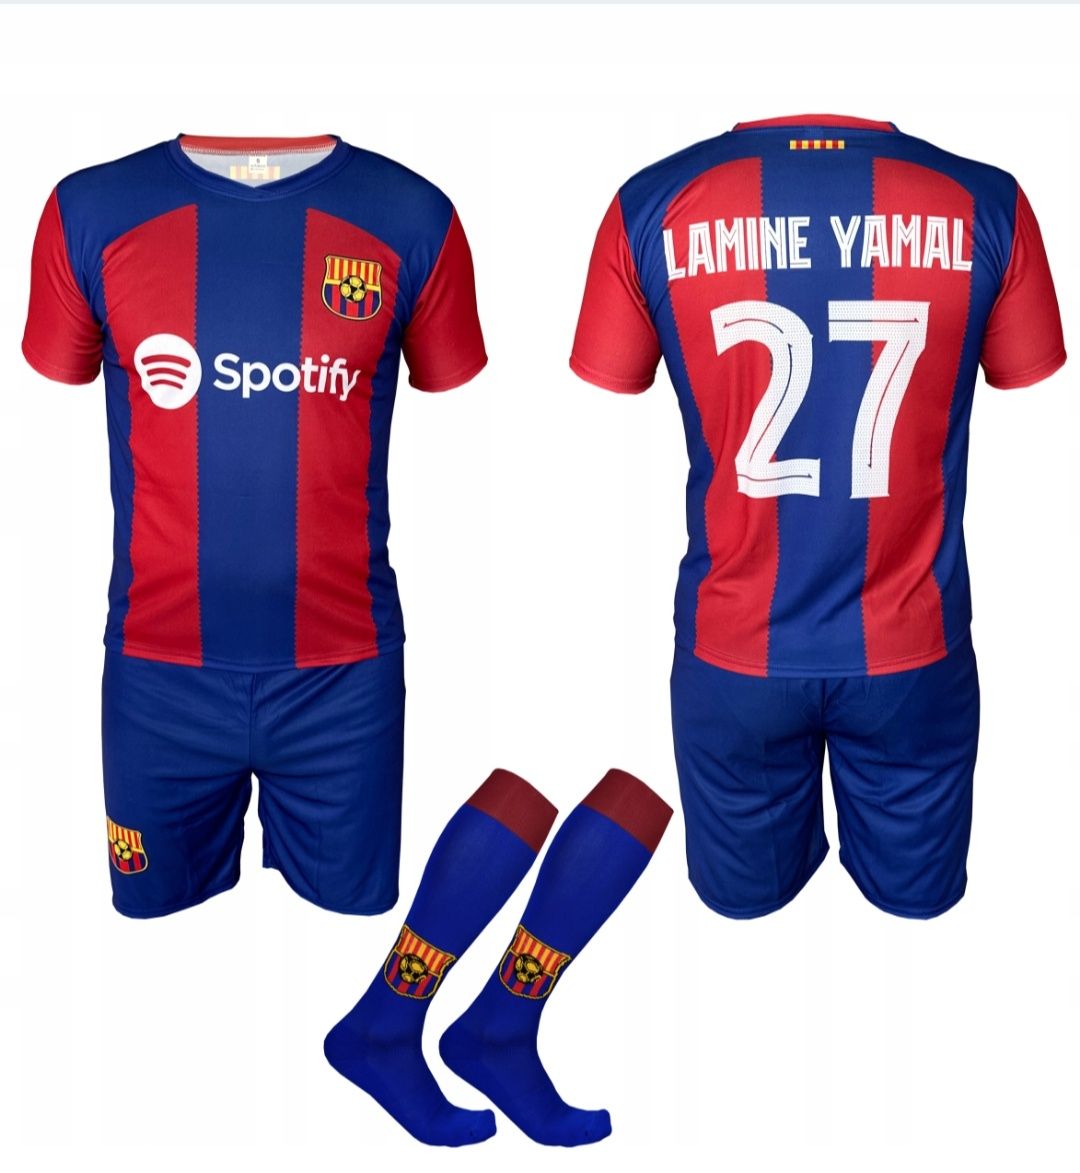 Strój piłkarski dziecięcy z getrami FC Barcelona Lamine Yamal rozm.164